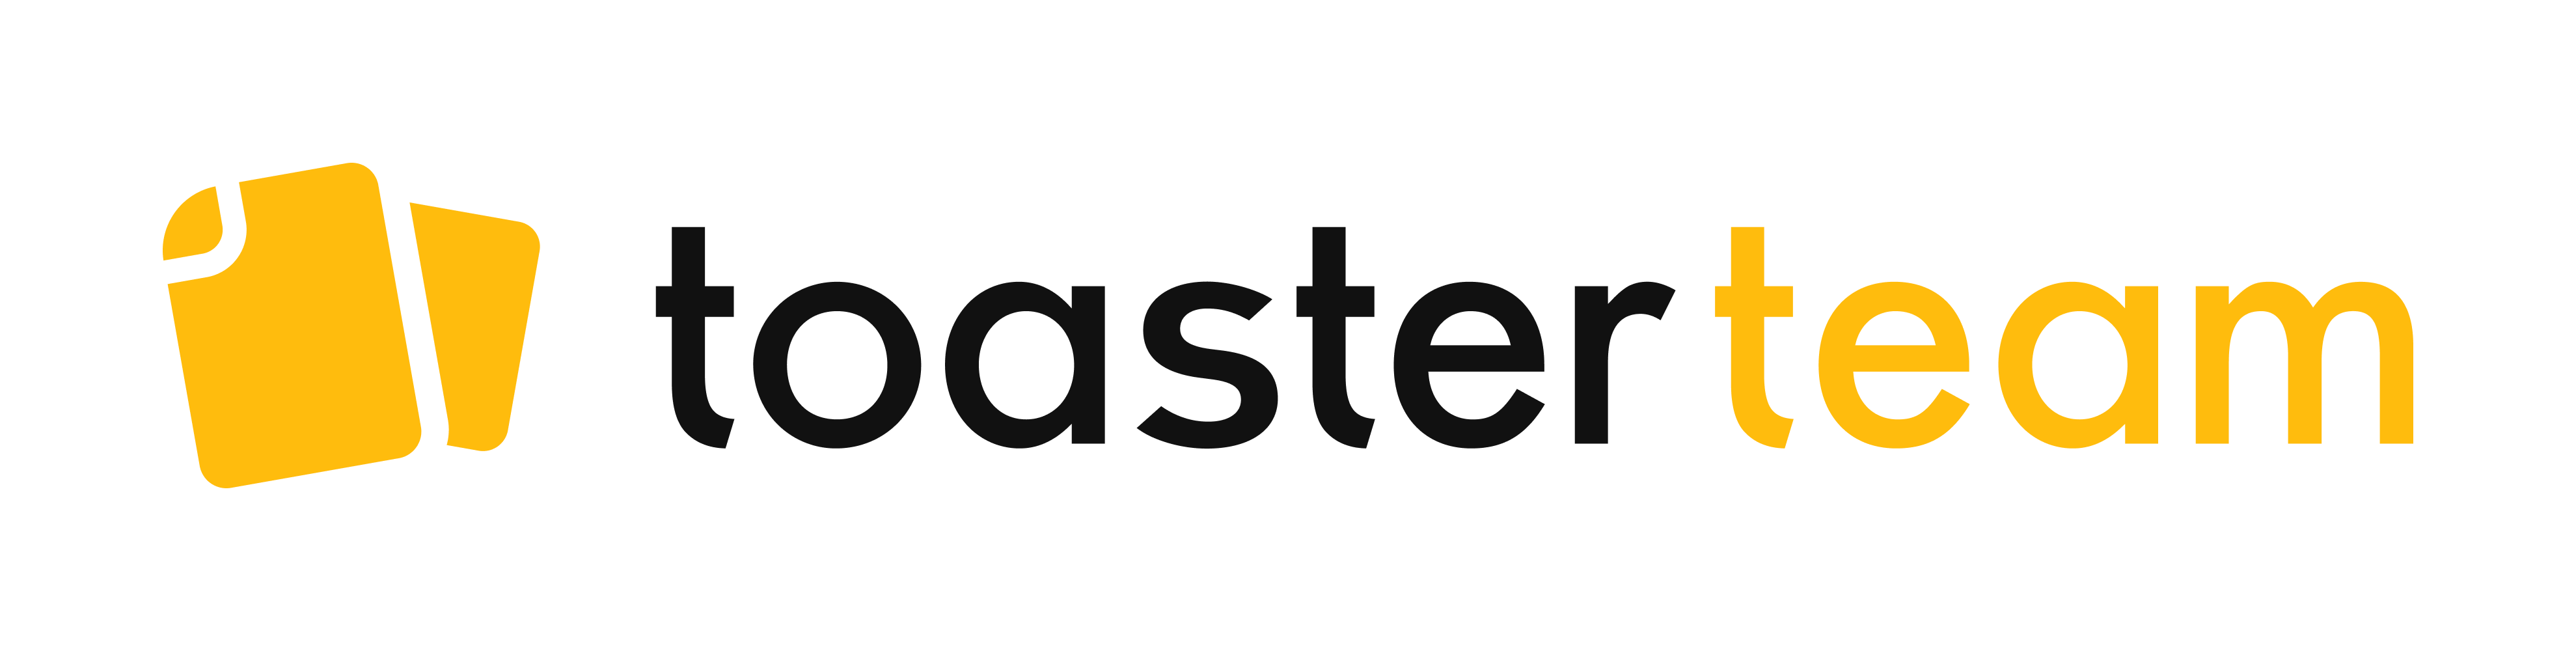 マニュアル&ナレッジ管理アプリ toaster team トースターチーム